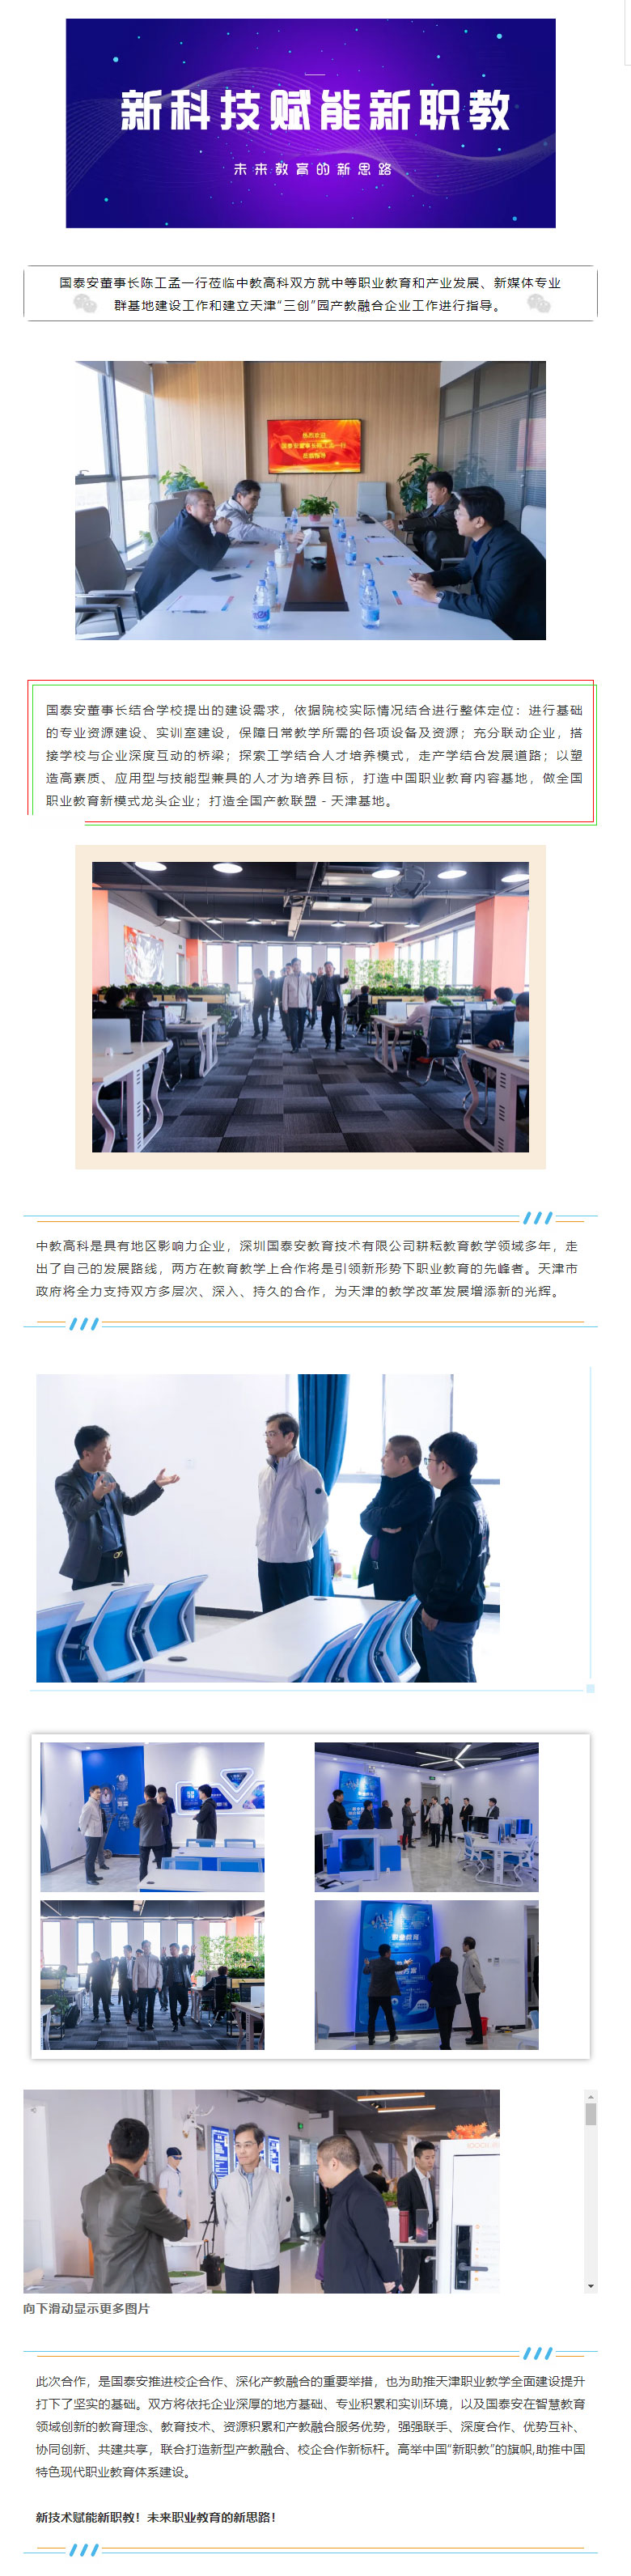 天津中教集团与深圳国泰安集团，共同打造天津新数字媒体专业群建设基地；建立-“创意、创新、创业”-三创.jpg